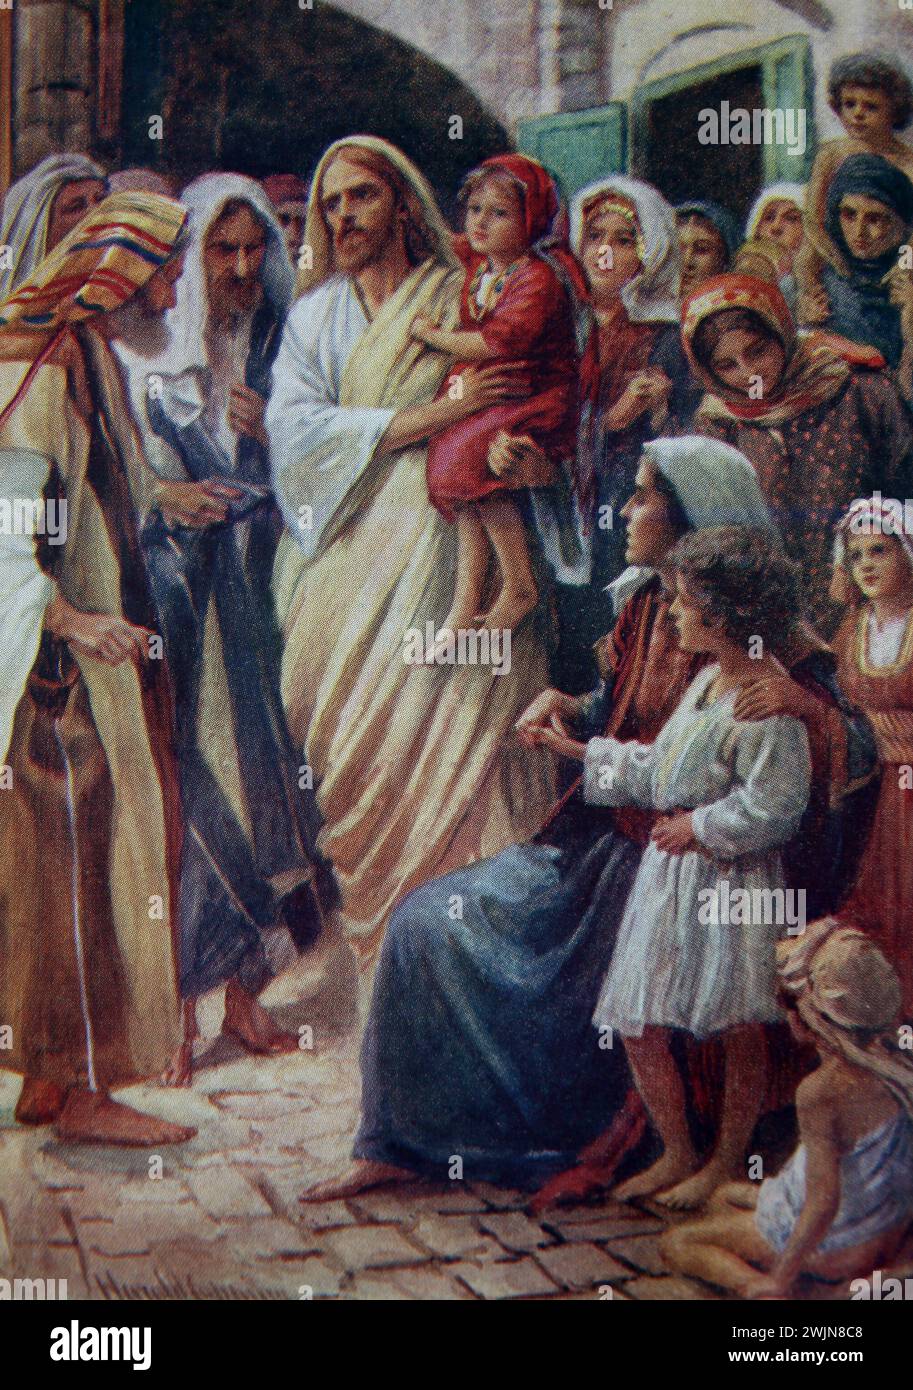 Illustration de Jésus Christ recevant de petits enfants (Évangile de Marc) Nouveau Testament par Harold Copping Banque D'Images